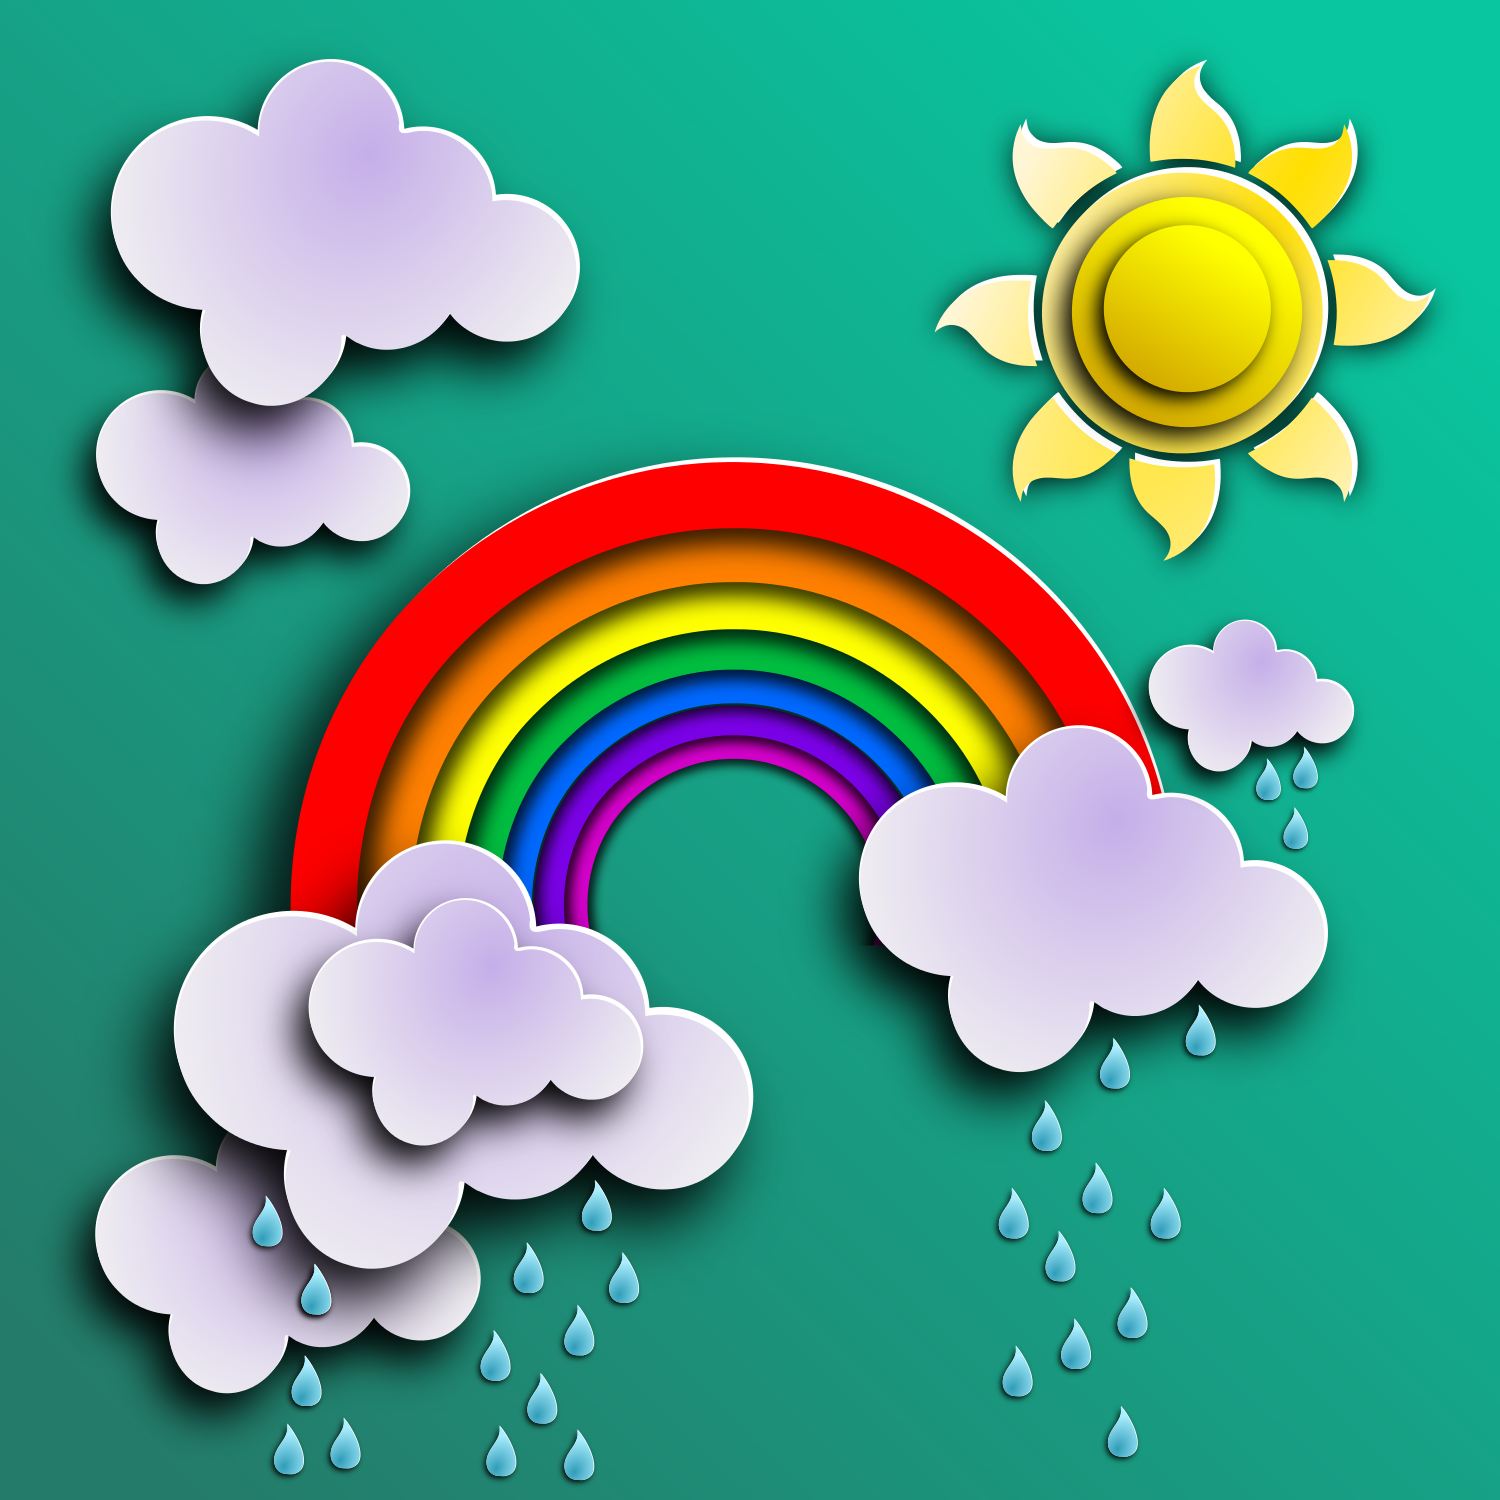 Imagens coloridas do sol dos desenhos animados com nuvens, chuva e  arco-íris no fundo branco. Jogos ao ar livre. Conjunto de ilustrações  vetoriais . imagem vetorial de Oleon17© 321286616